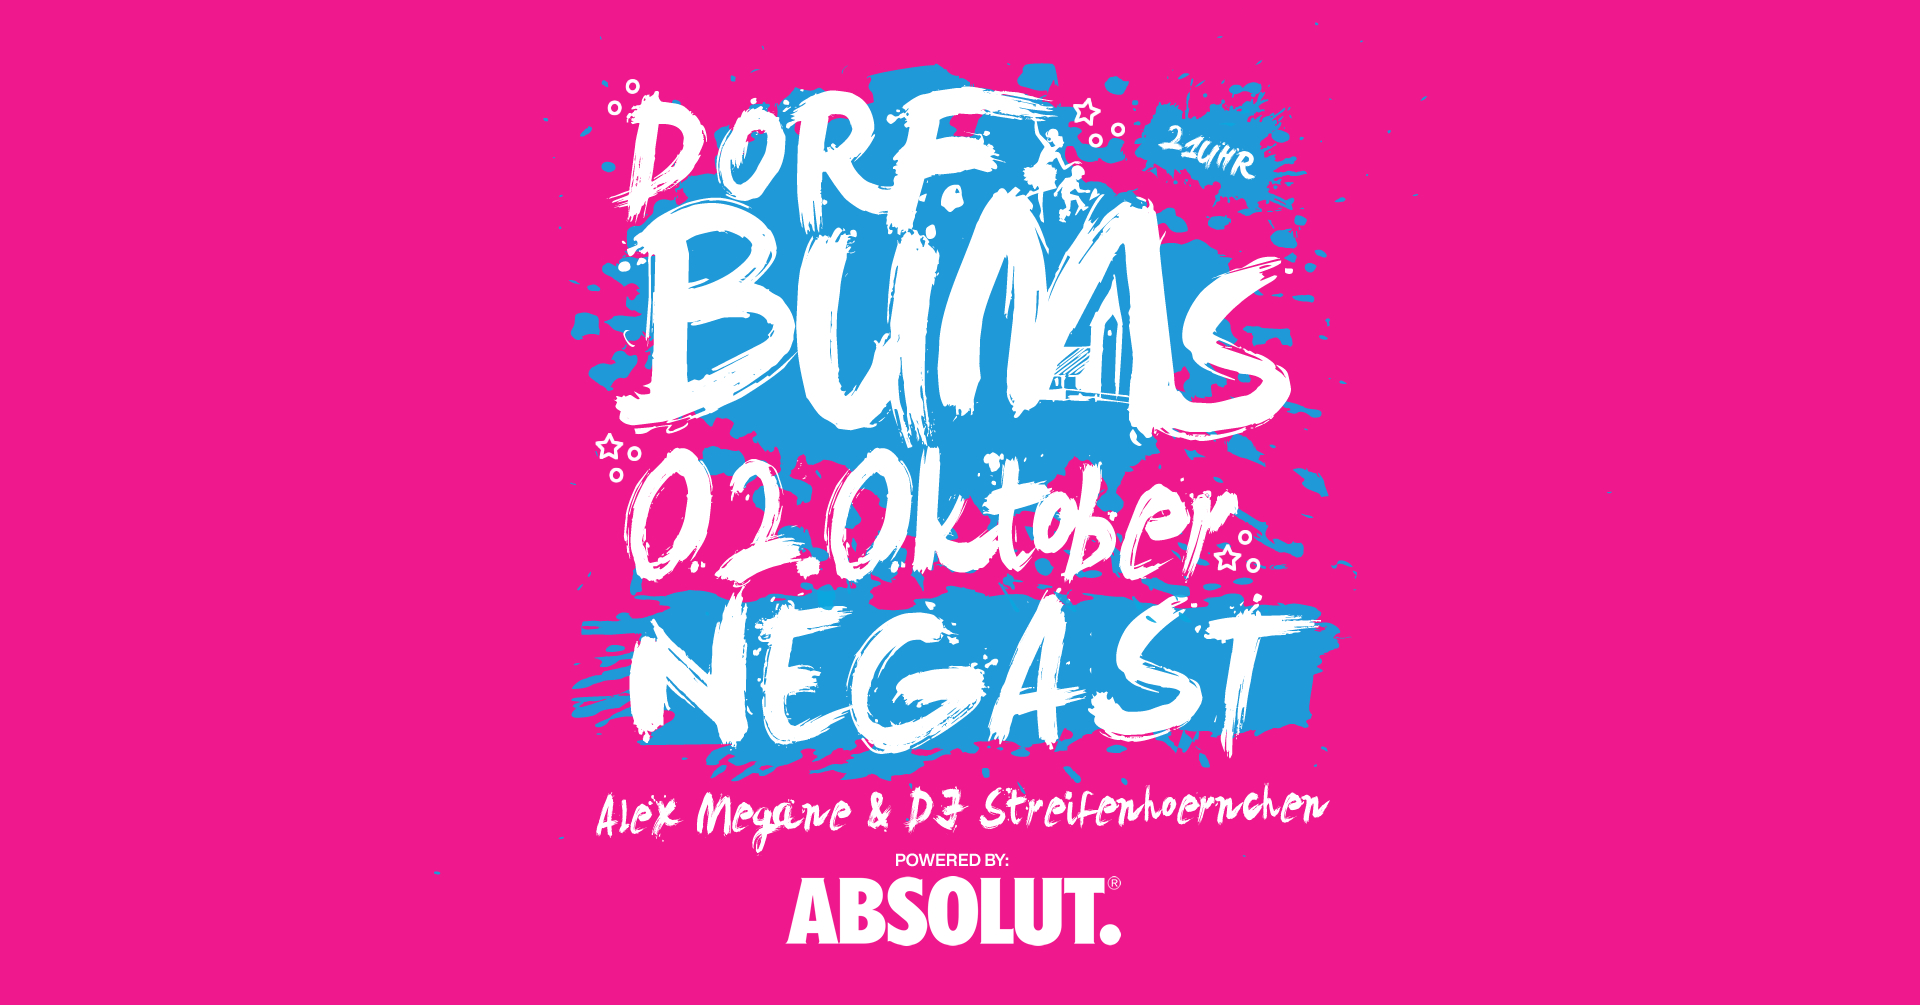 Dorfbums Negast - Alex Megane und DJ Streifenhoernchen